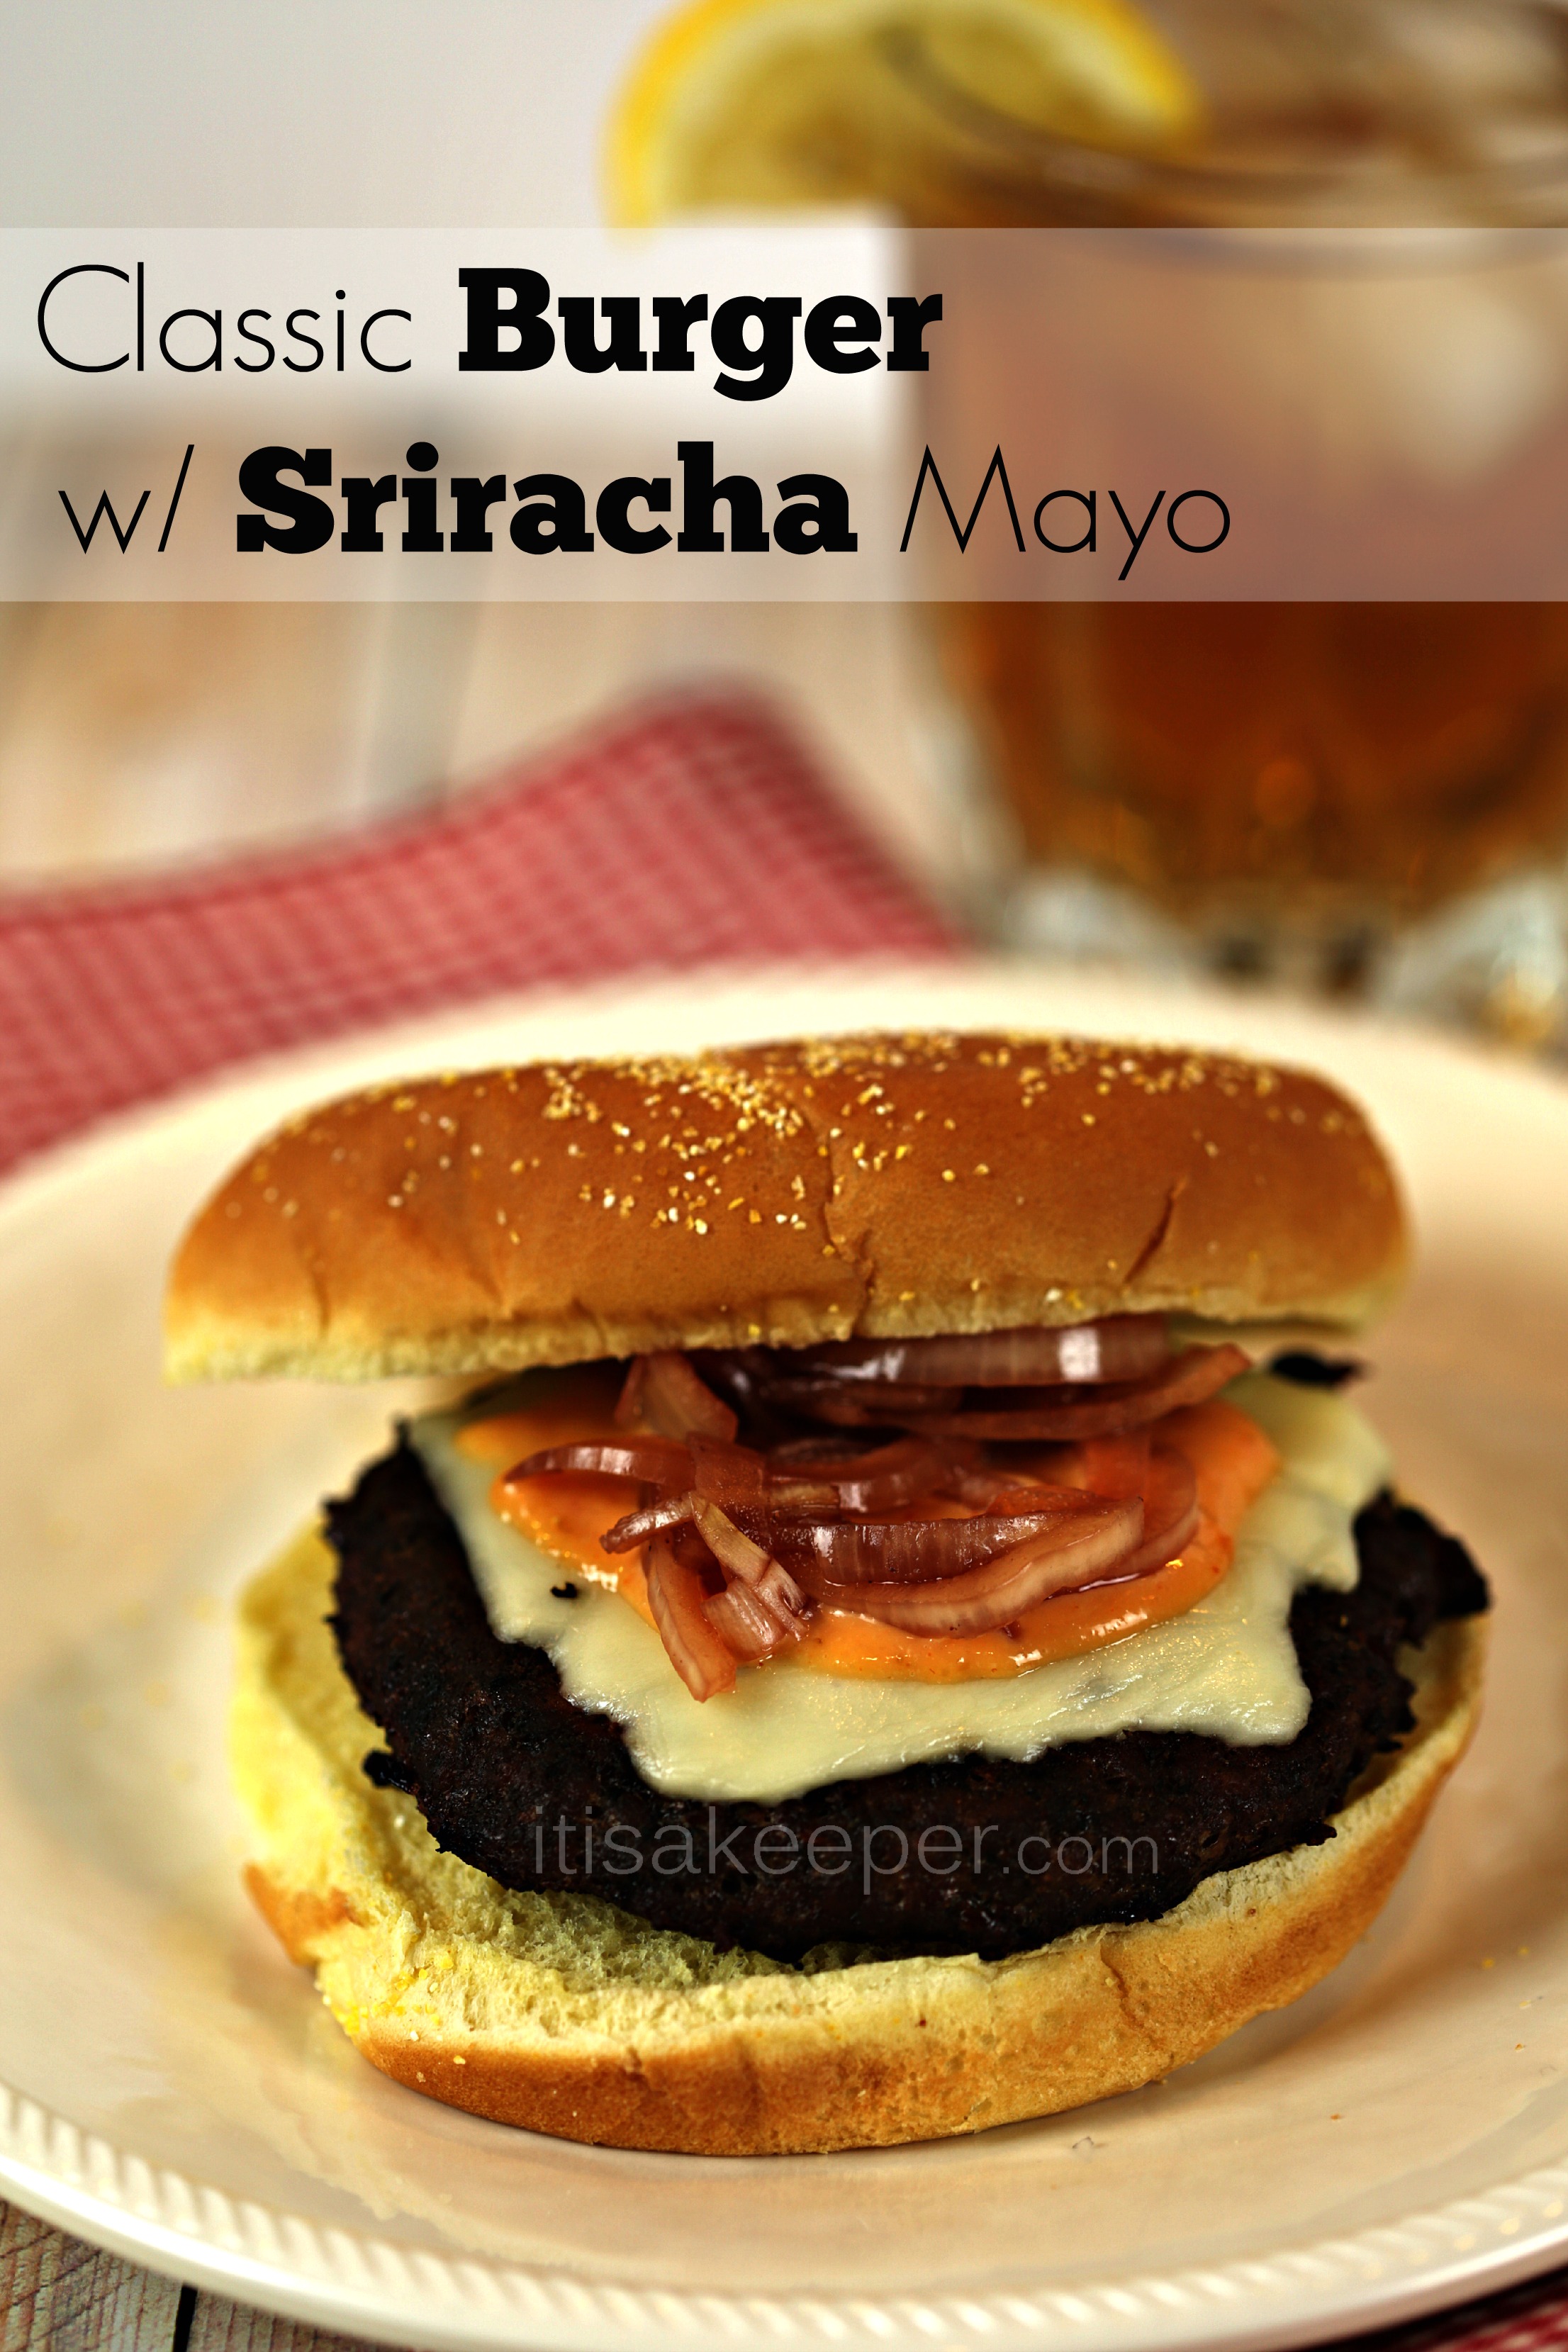 Classic Burger with Sriracha Mayo